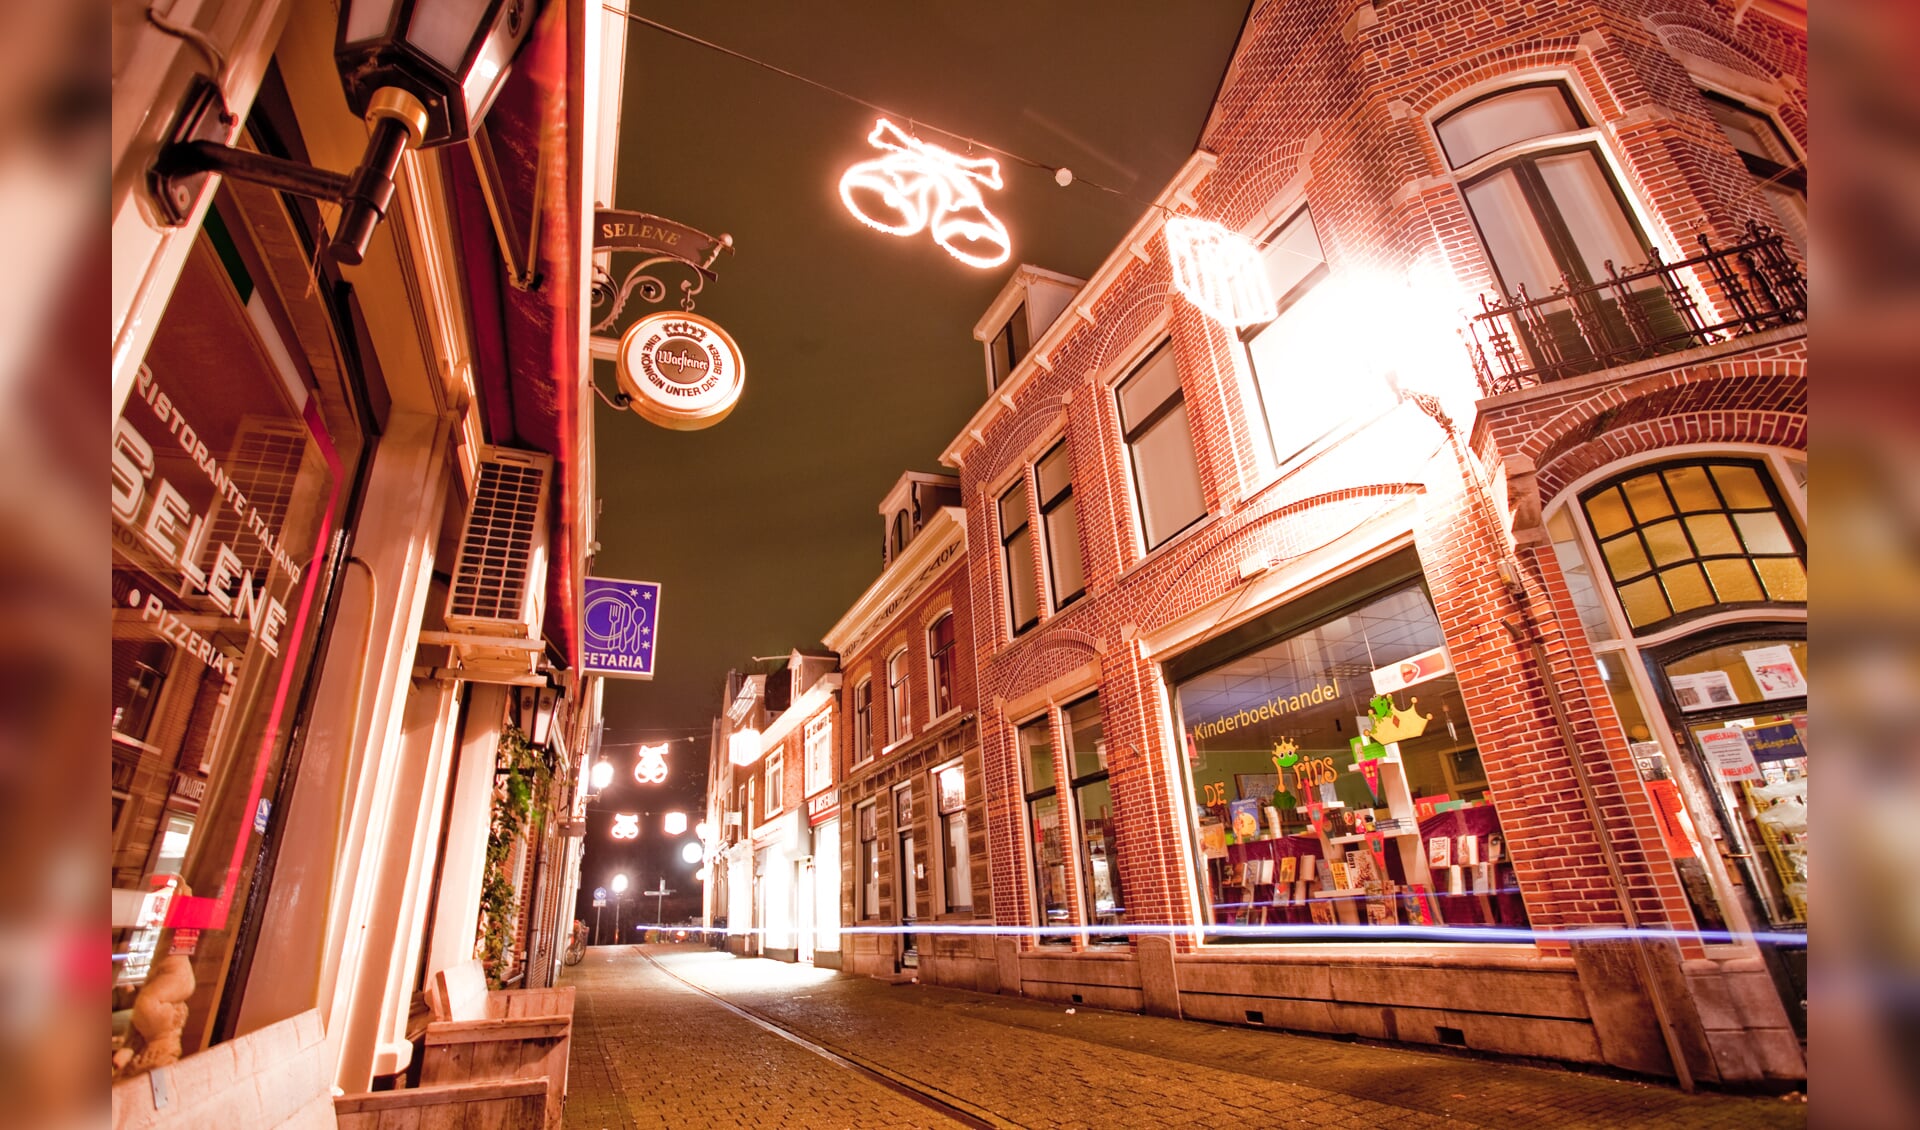 Feestverlichting hangt weer in Slijkstraat